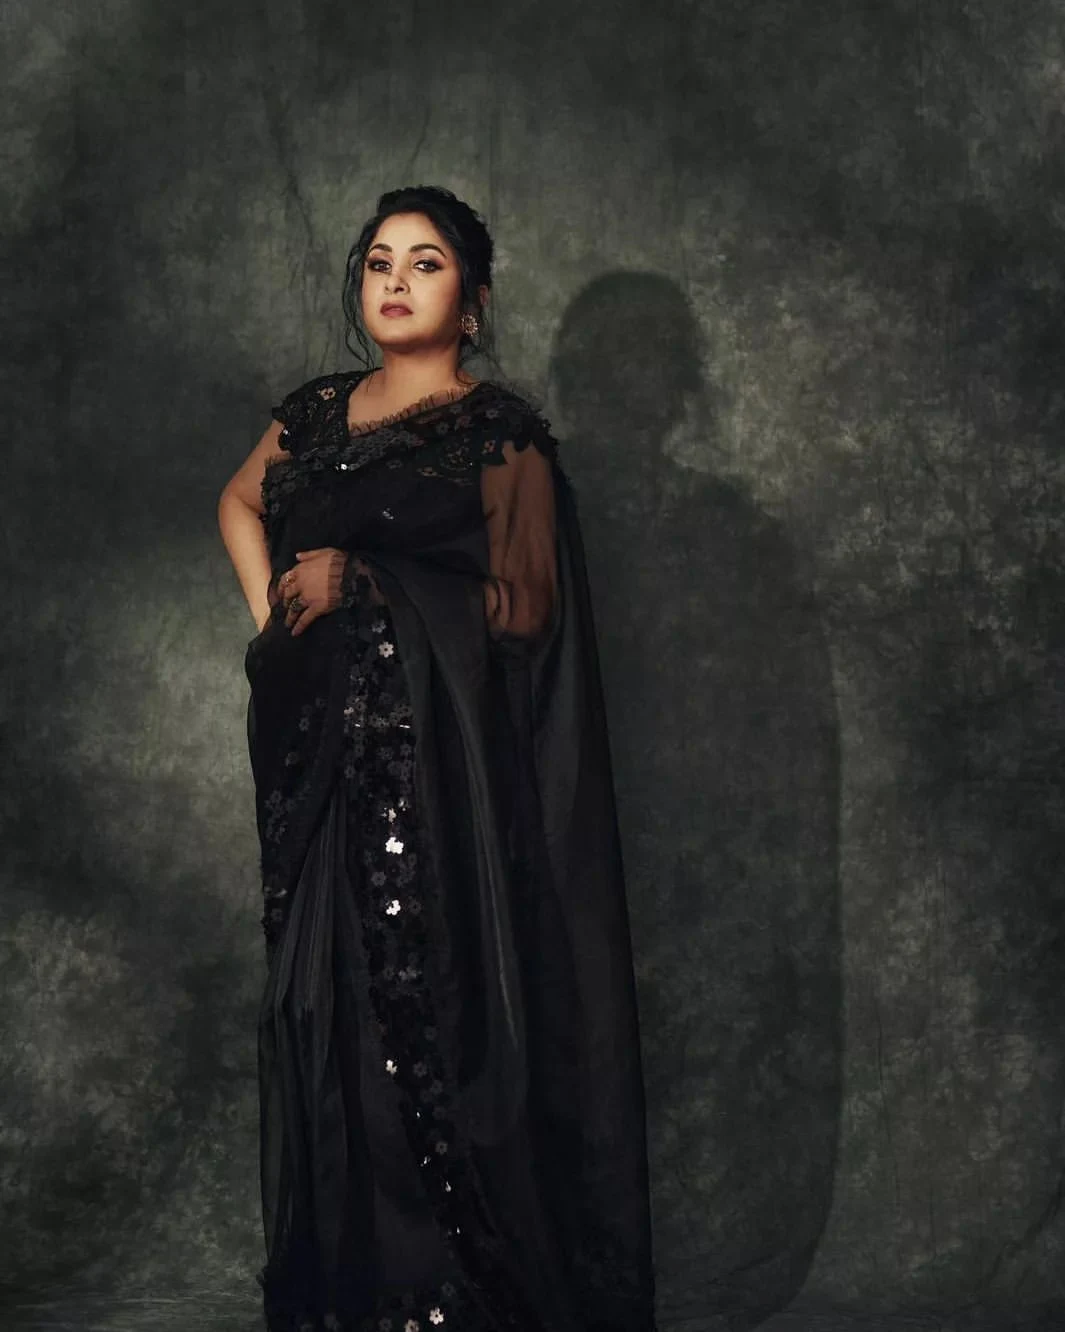 Actress Ramya krishnan black transparent saree Pics